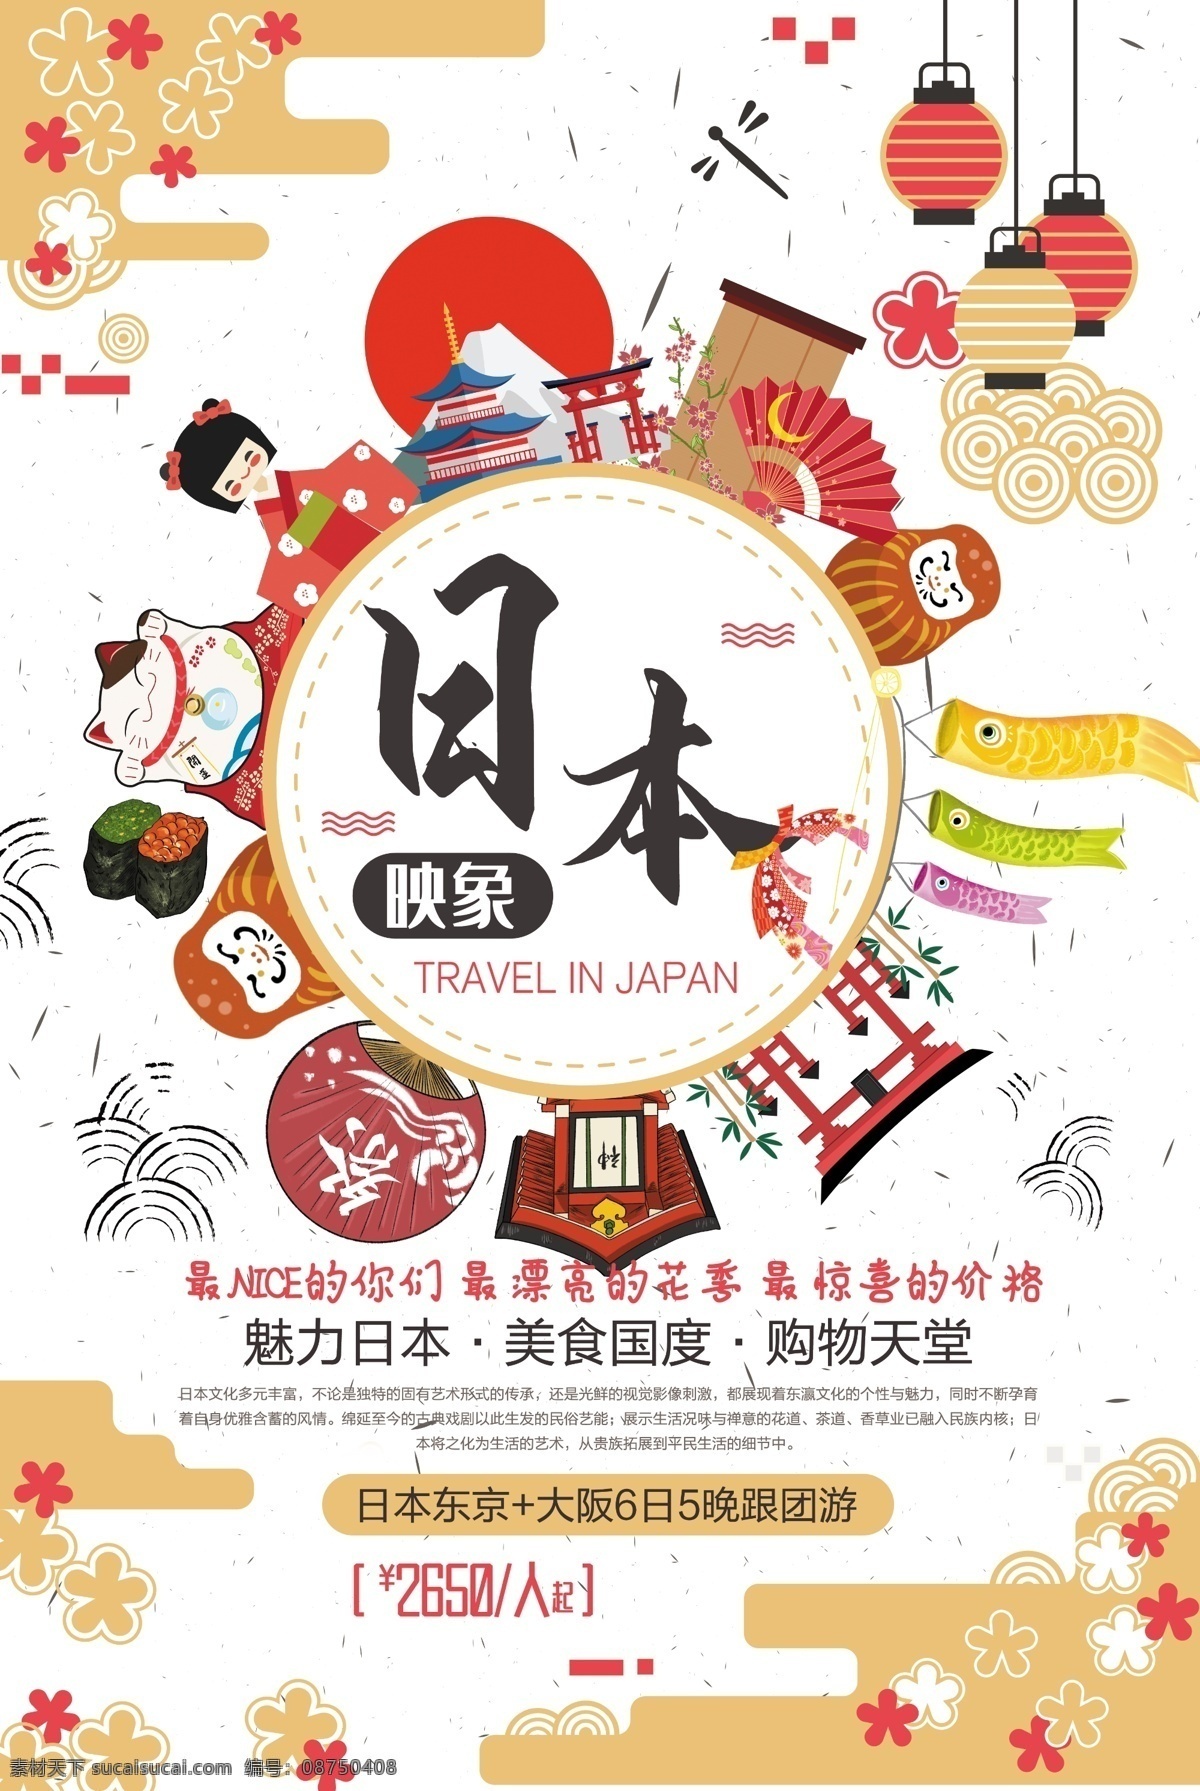 日本 旅游文化 冬季 出国游 宣传海报 简约 促销 特色 美食 意境 创意 商场 旅游 旅游海报